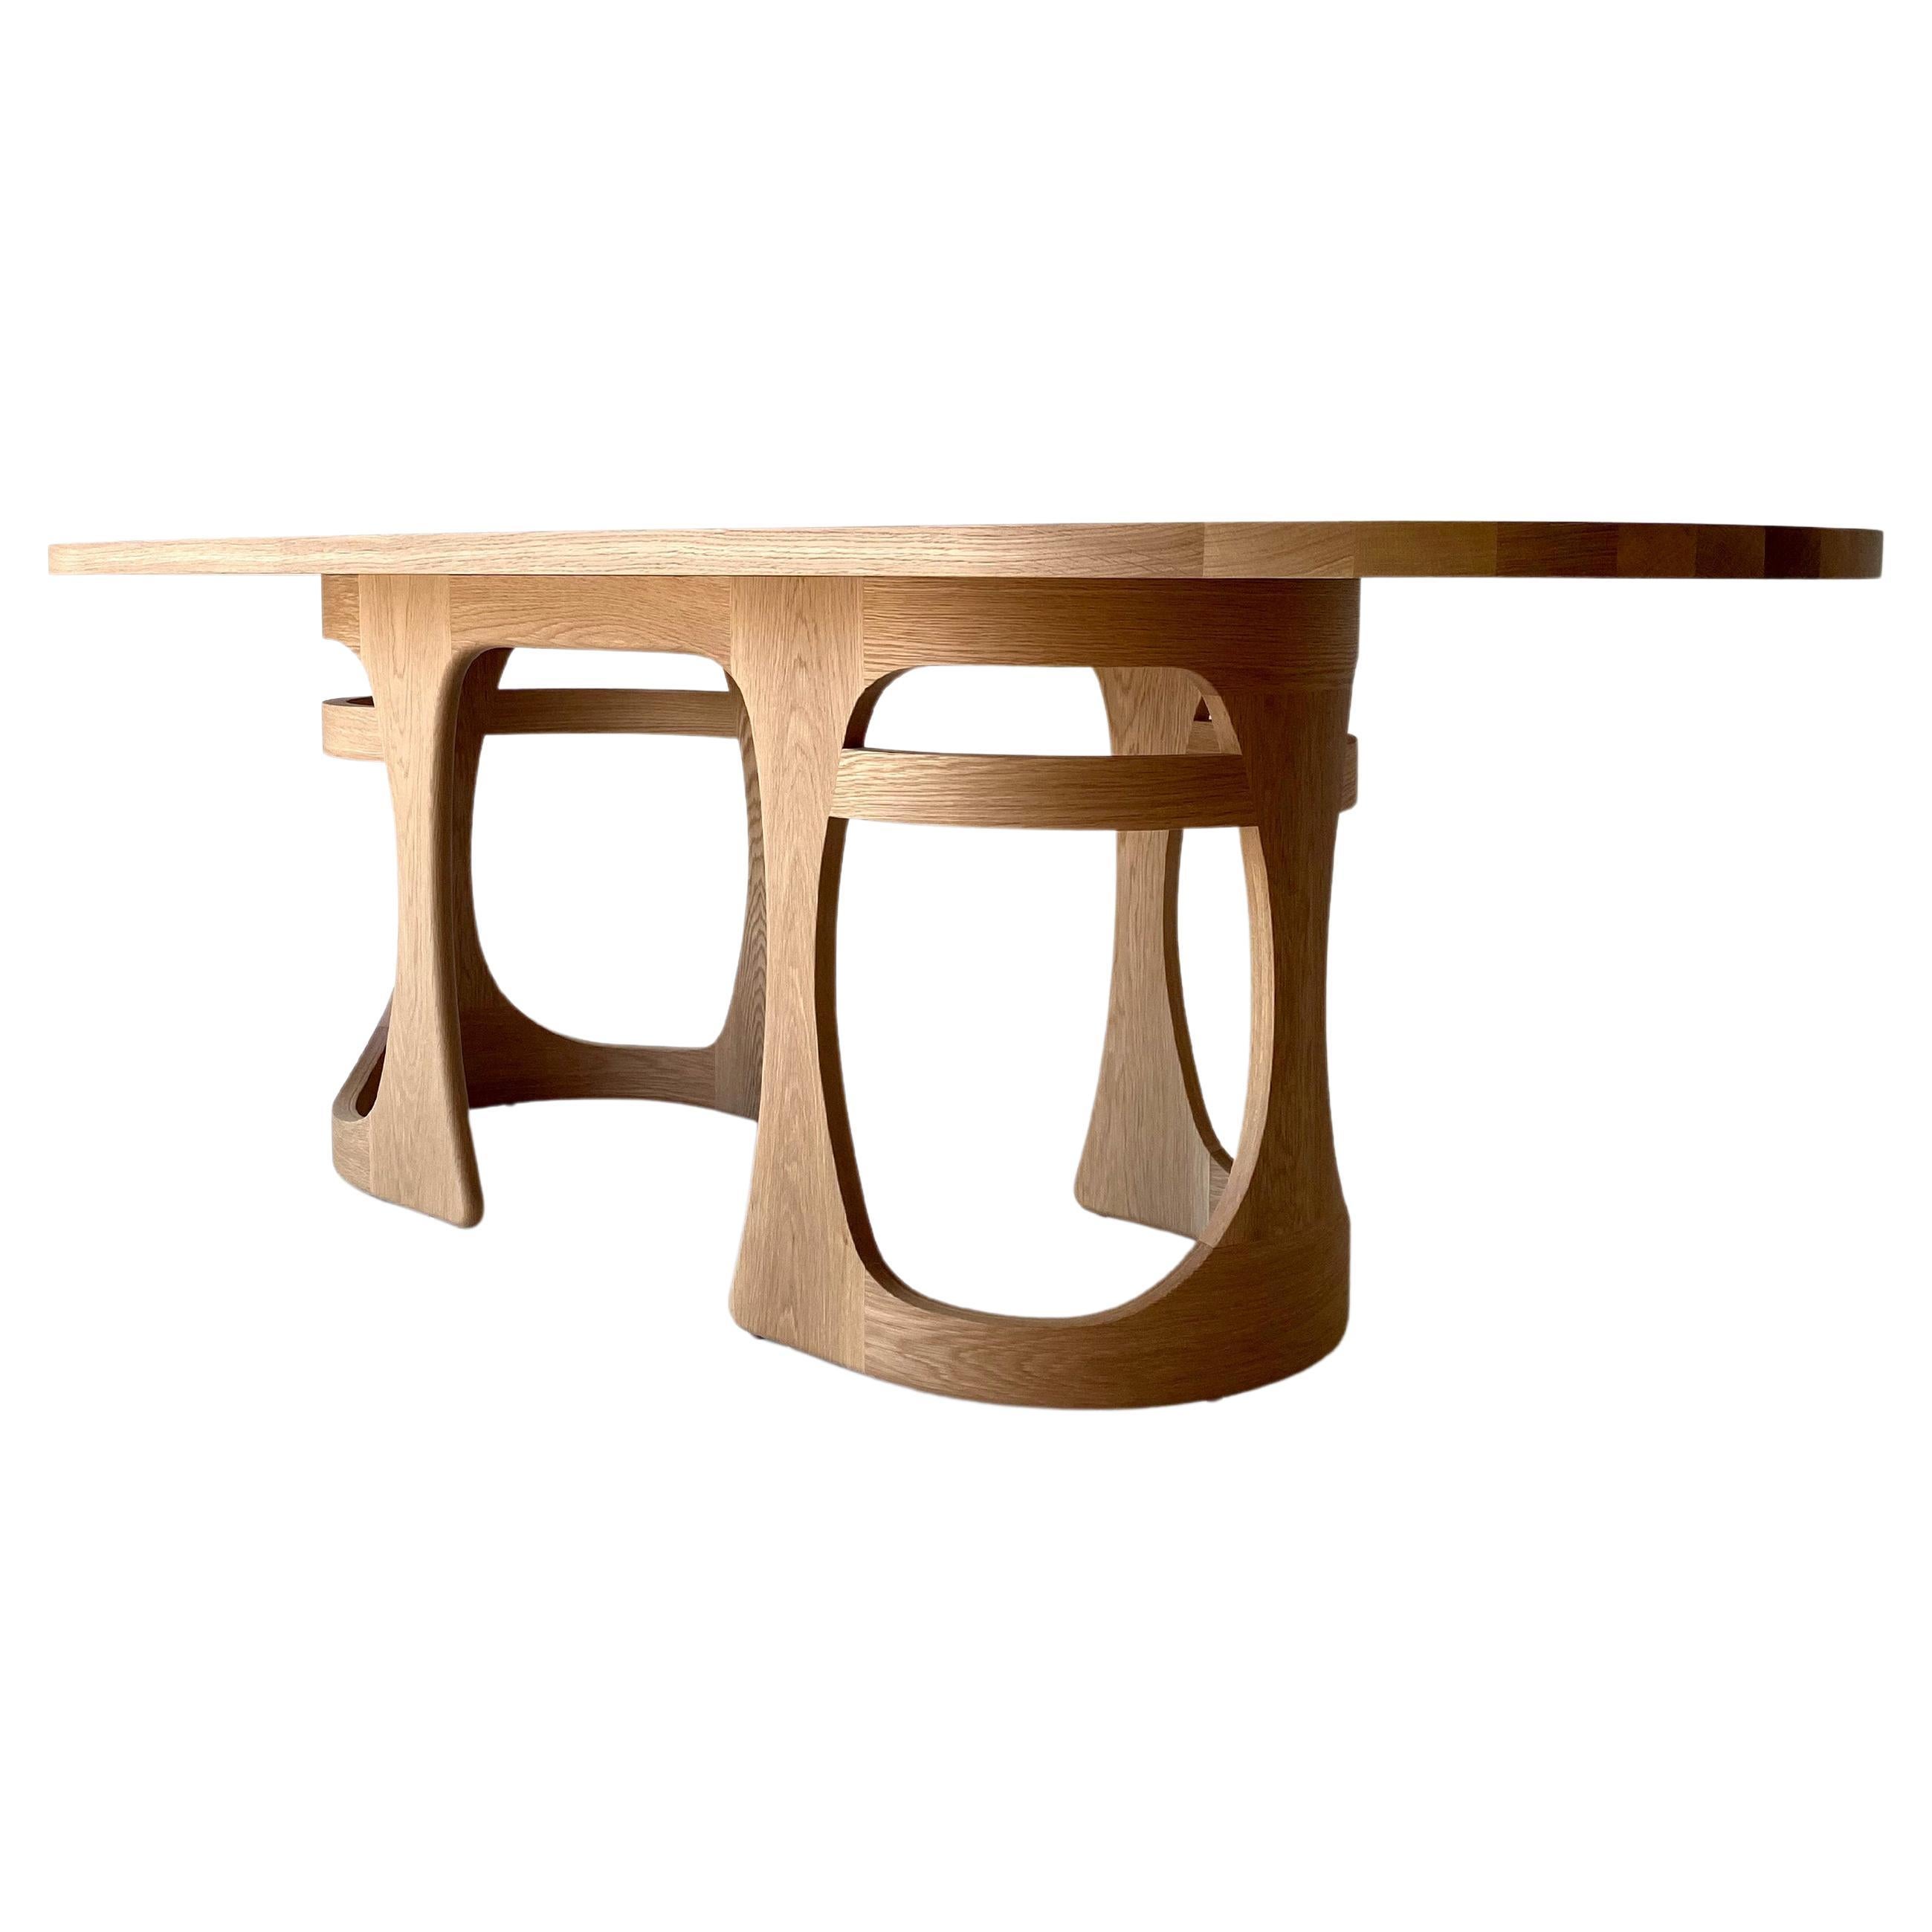 Esstisch von CraftAssociates, moderner Esstisch aus Eiche, Barricas-Kollektion